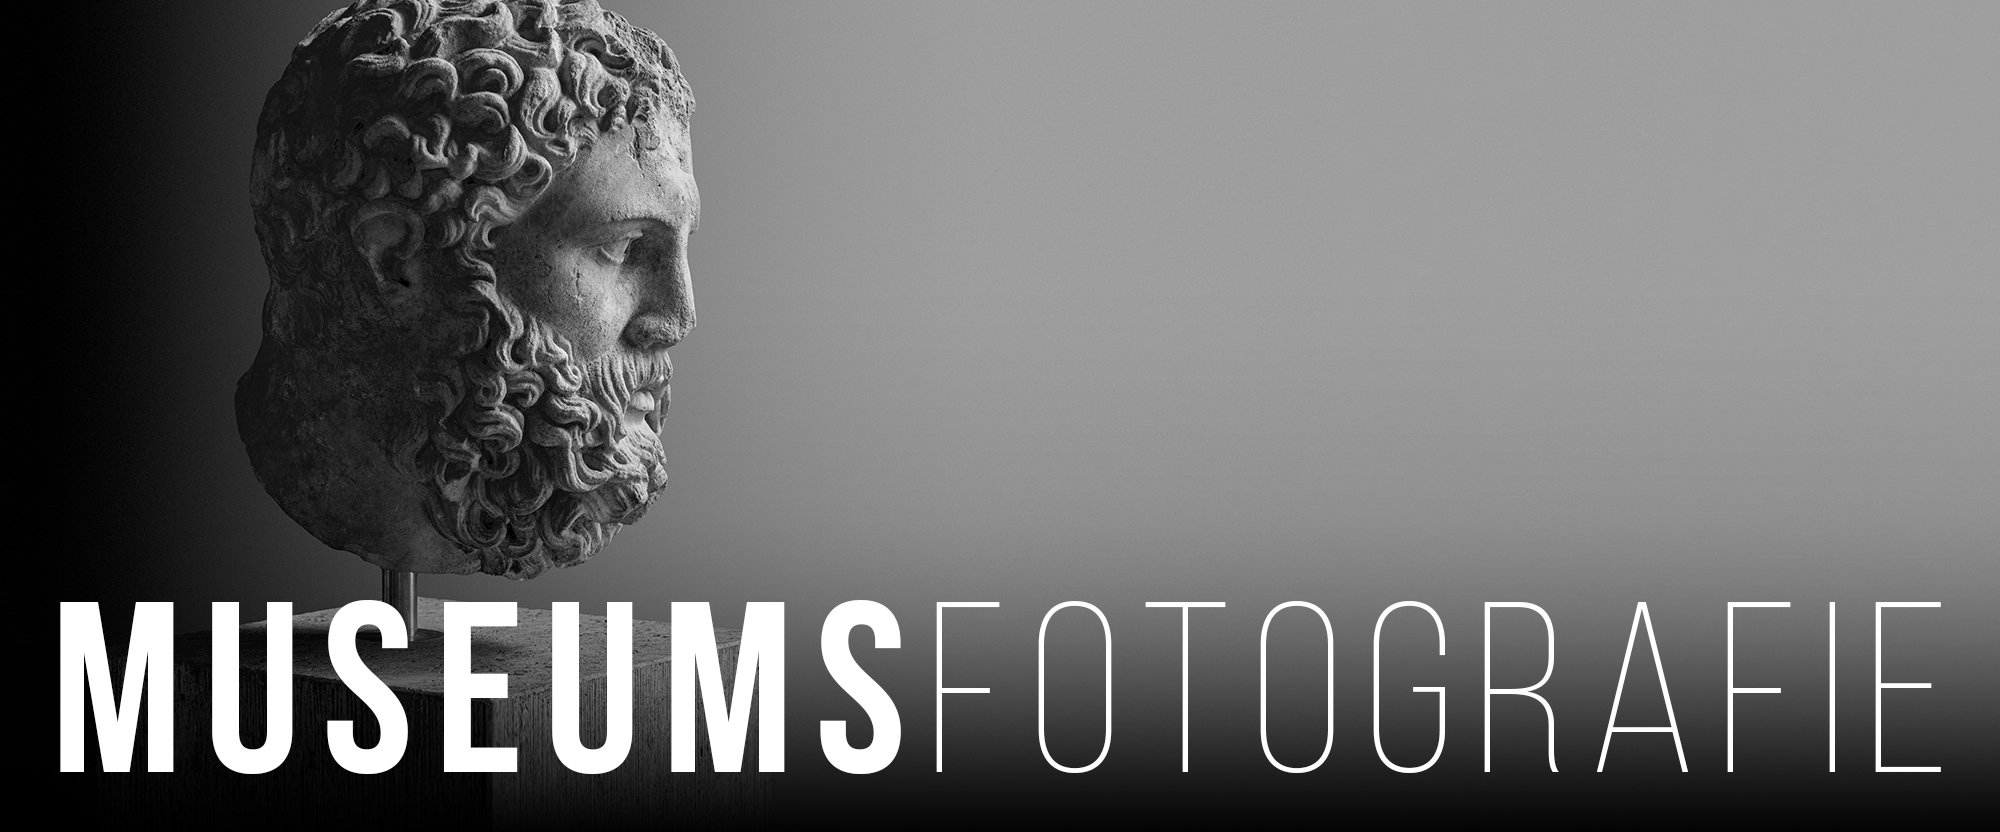 Museumsfotografie - Die besten Tipps für beeindruckende Bilder!